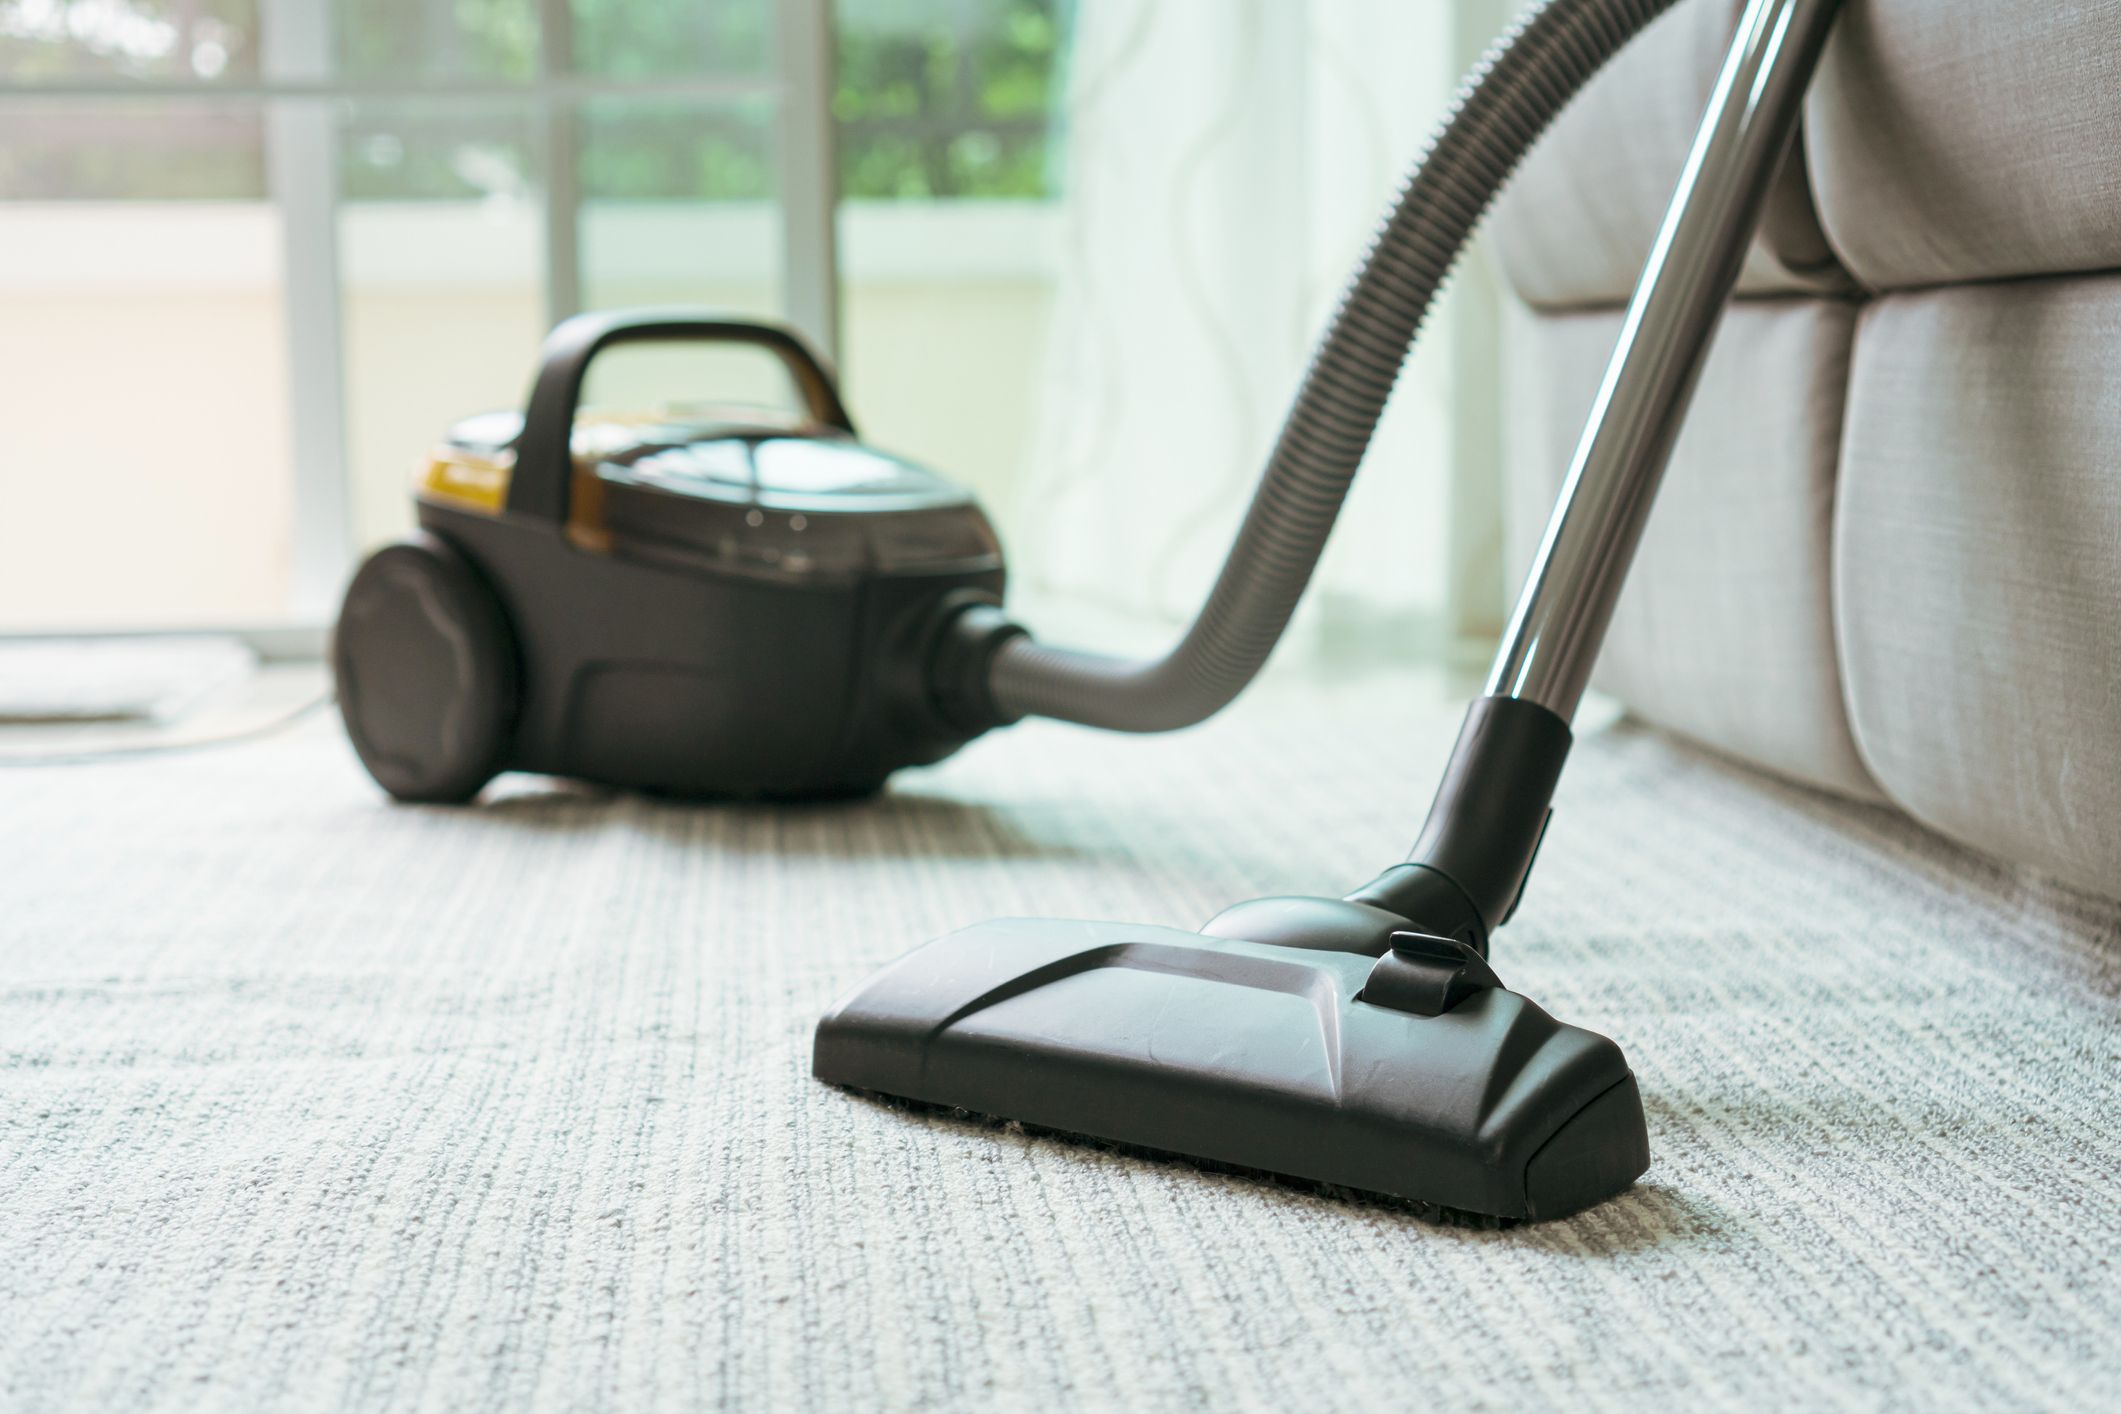 8 Best Hepa Vacuum Cleaners Reviews 2021, Best Rated Vacuum Cleaners For Hardwood Floors